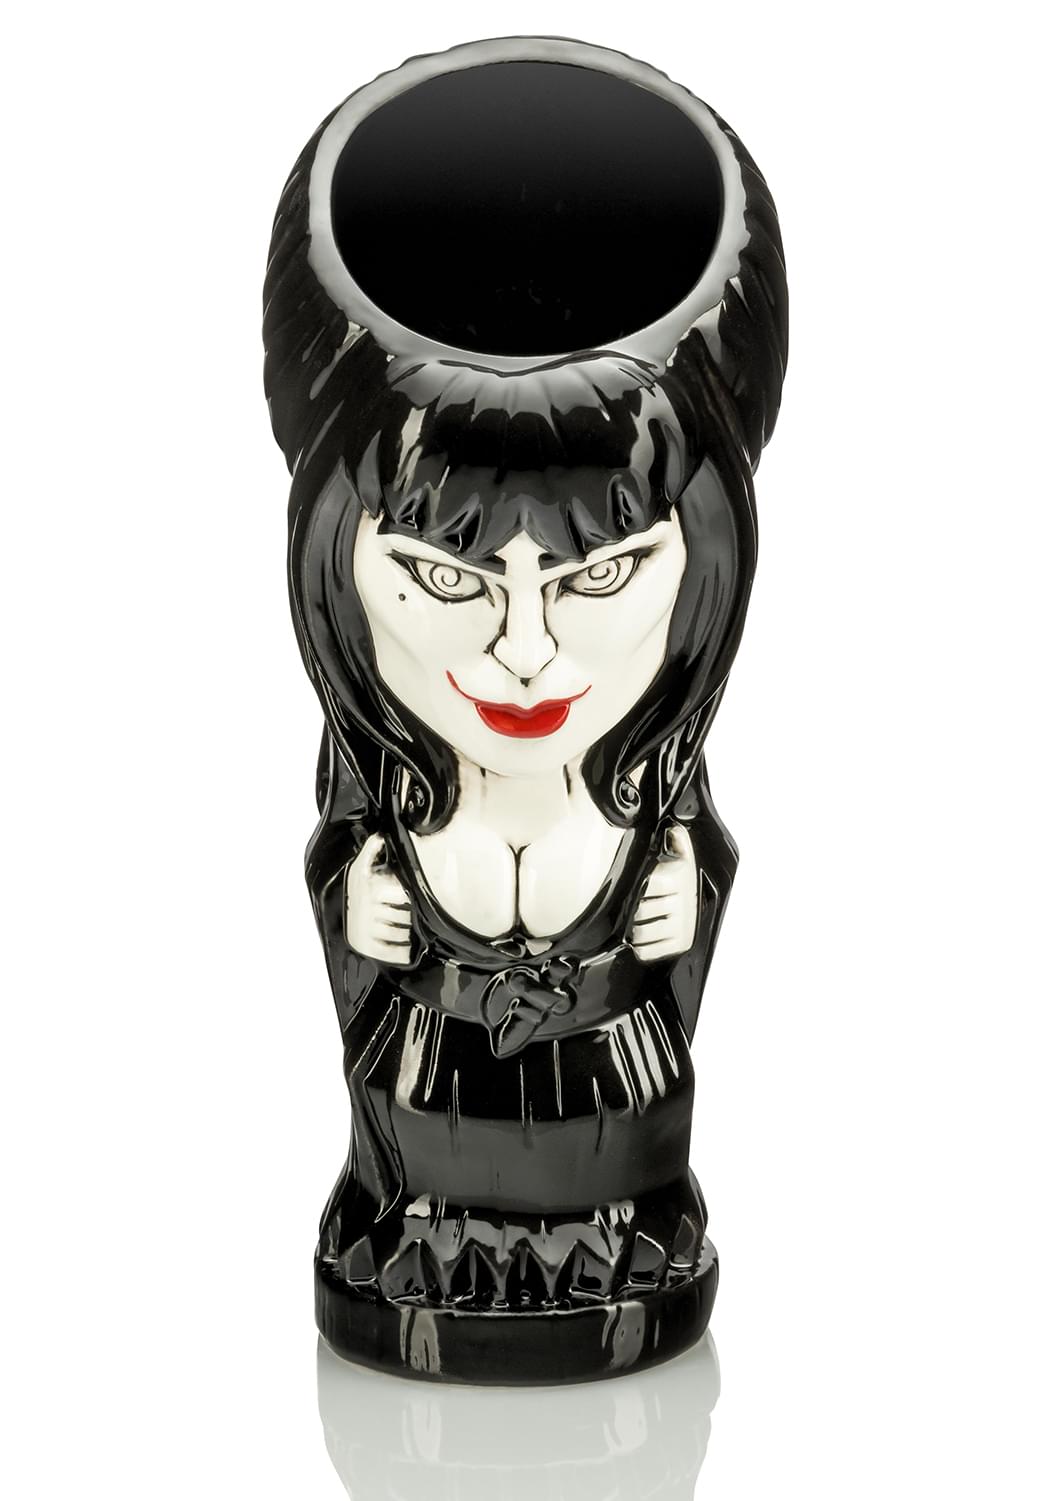 Geeki Tikis Elvira Mistress of the Dark Mug | Tiki Style Cup | Holds 20 Ounces